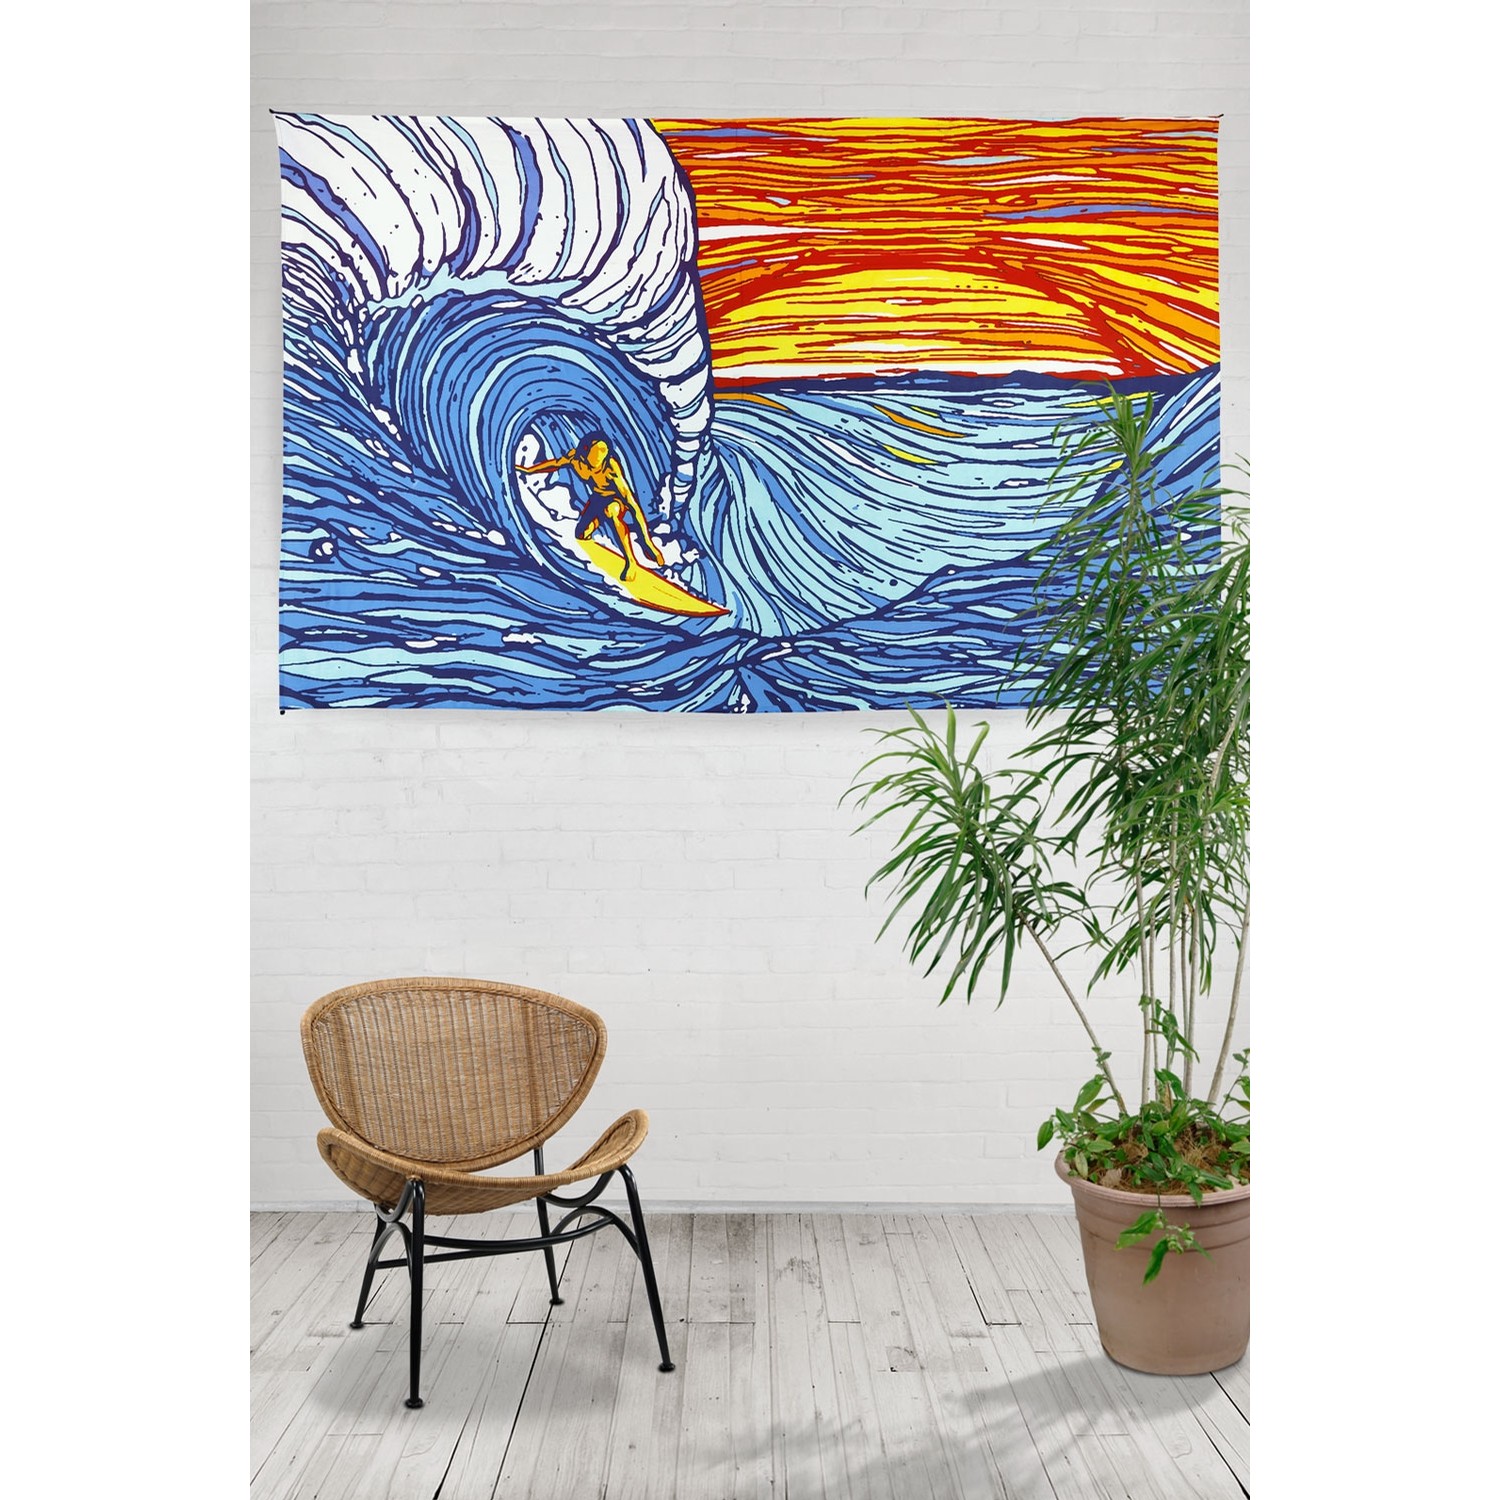 Sunset Surfer Tapestry